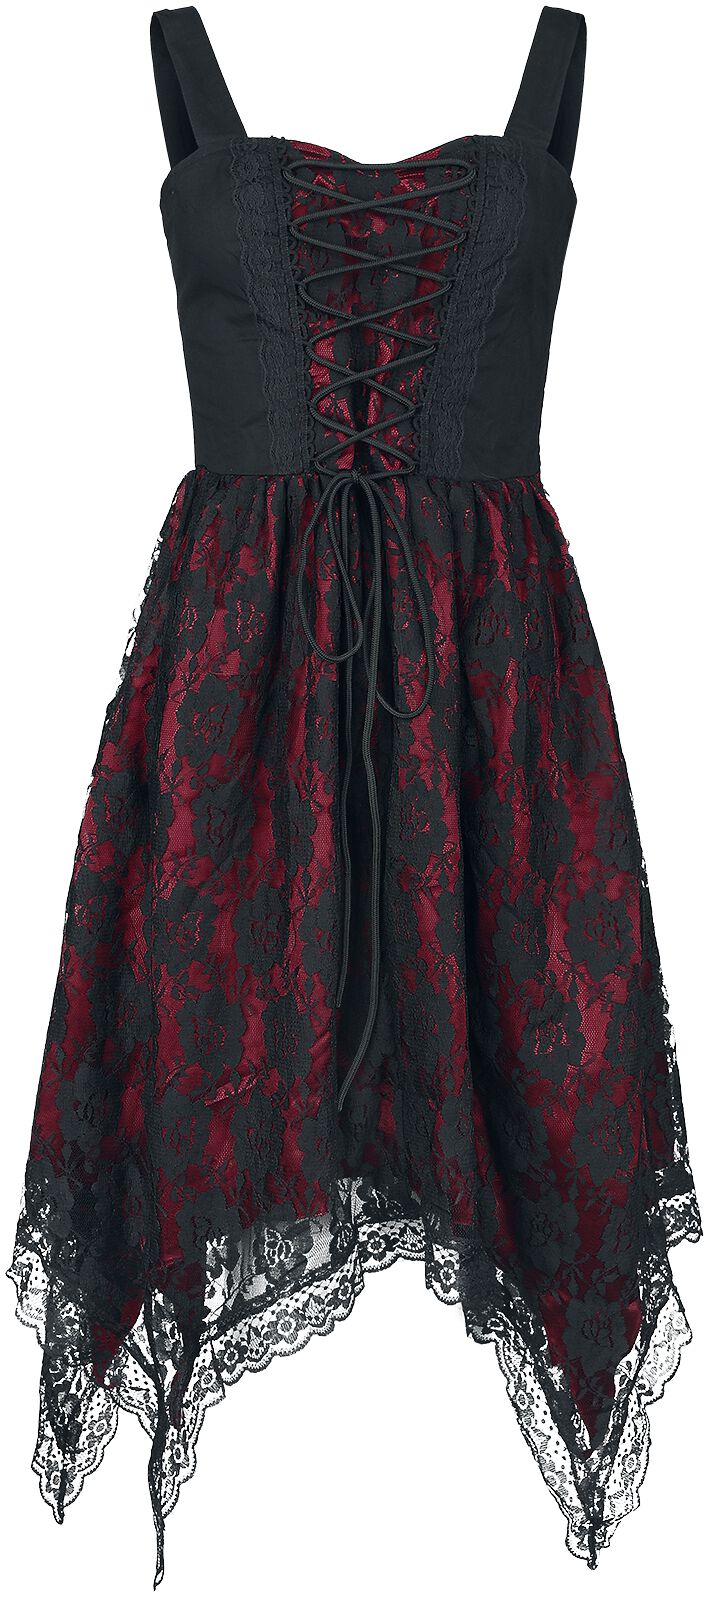 Gothicana by EMP Kleid mit Spitze und Zipfelsaum Kurzes Kleid schwarz rot in XL